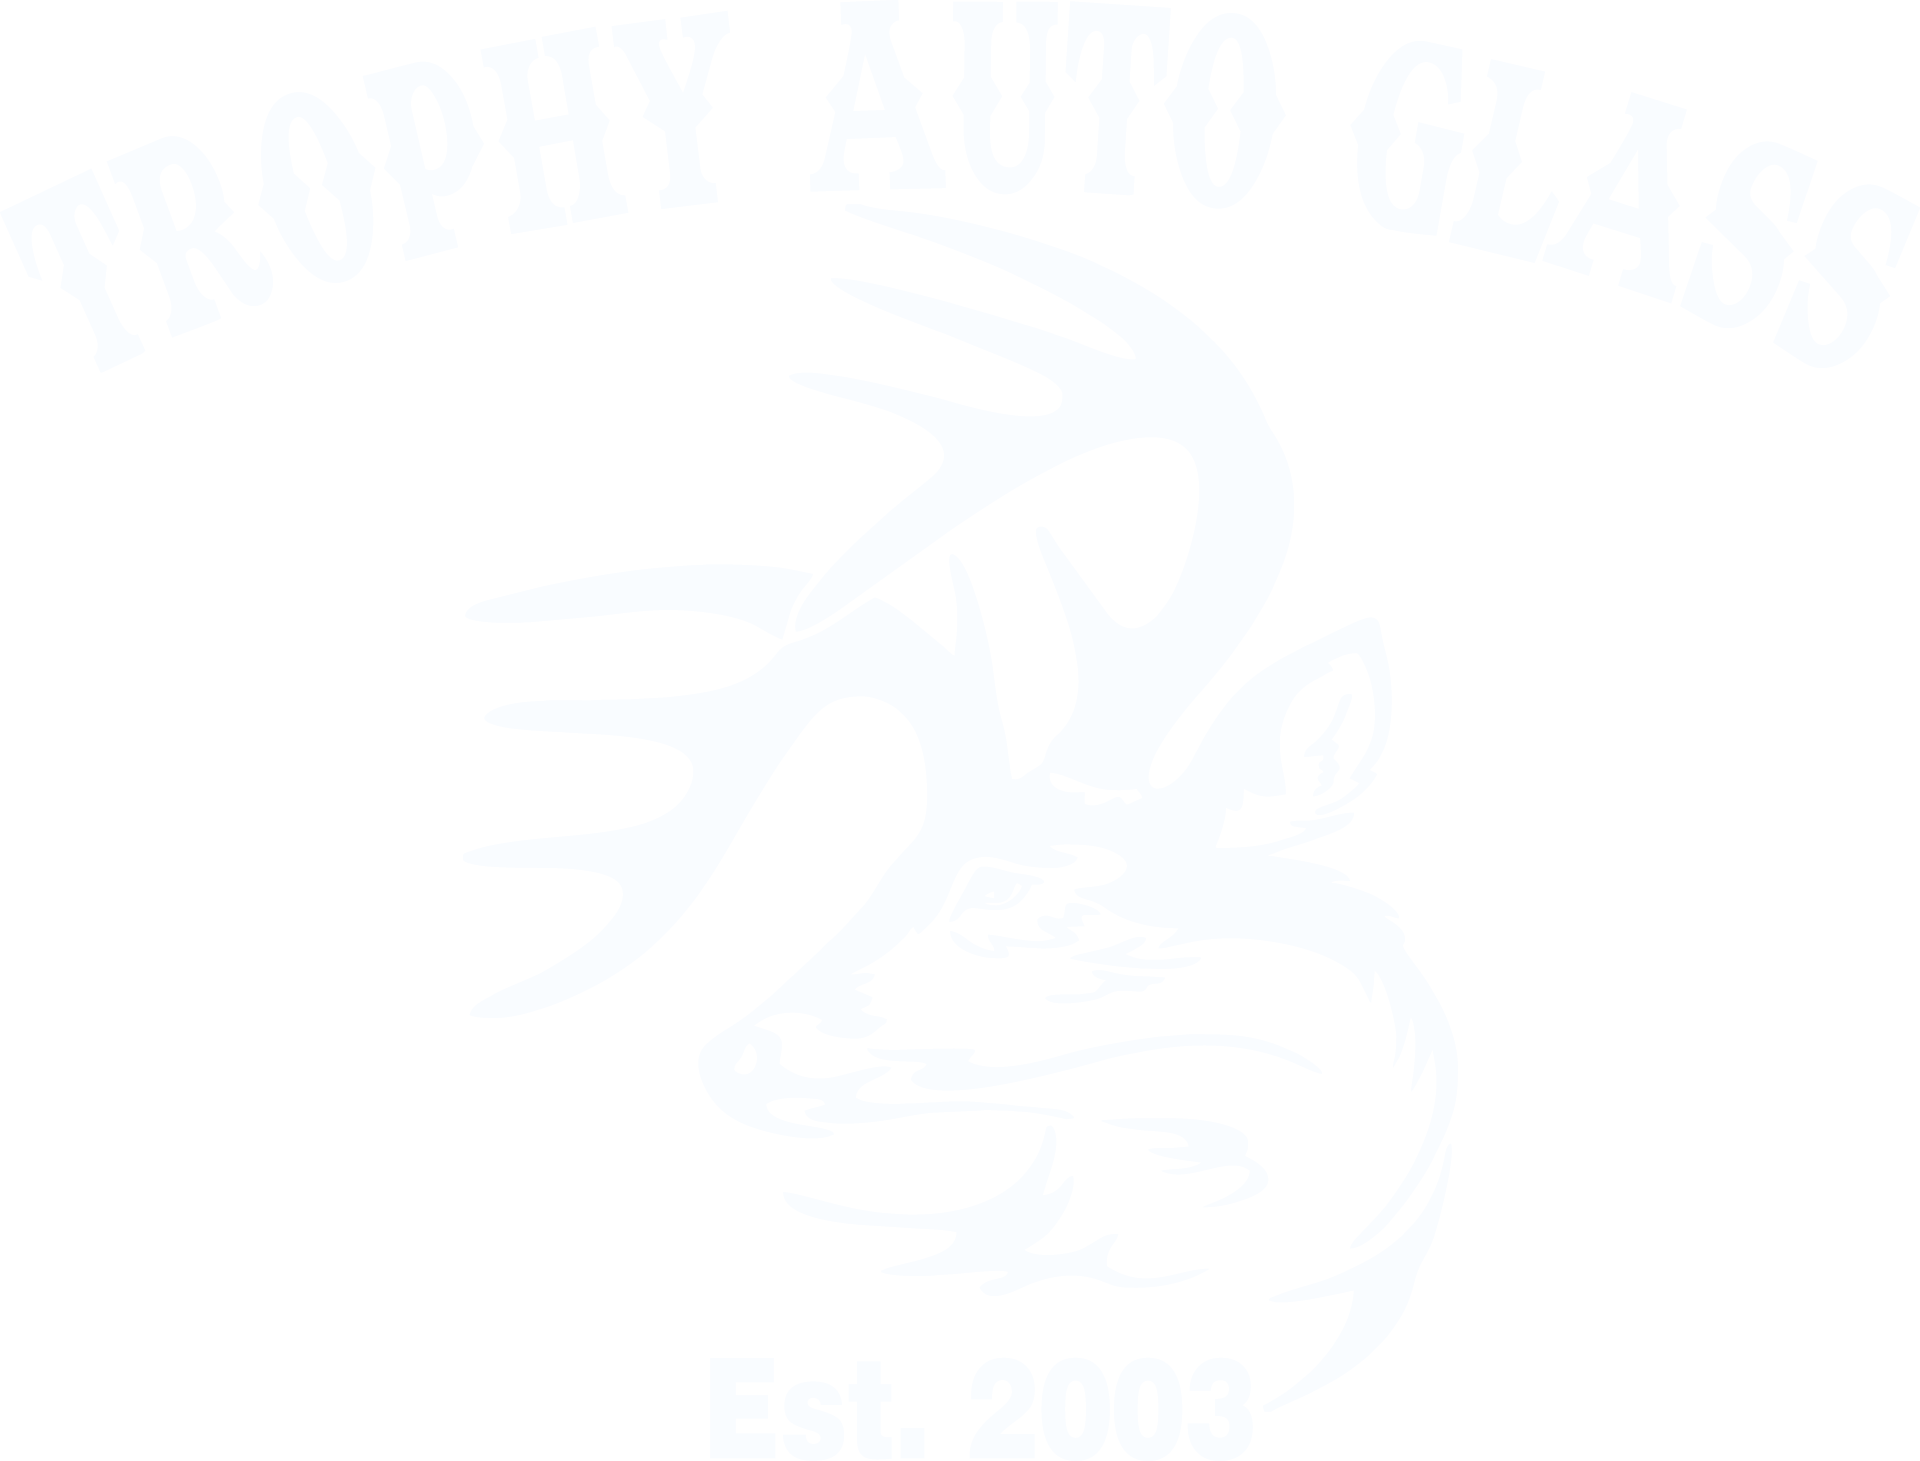 Trophy Auto Glass